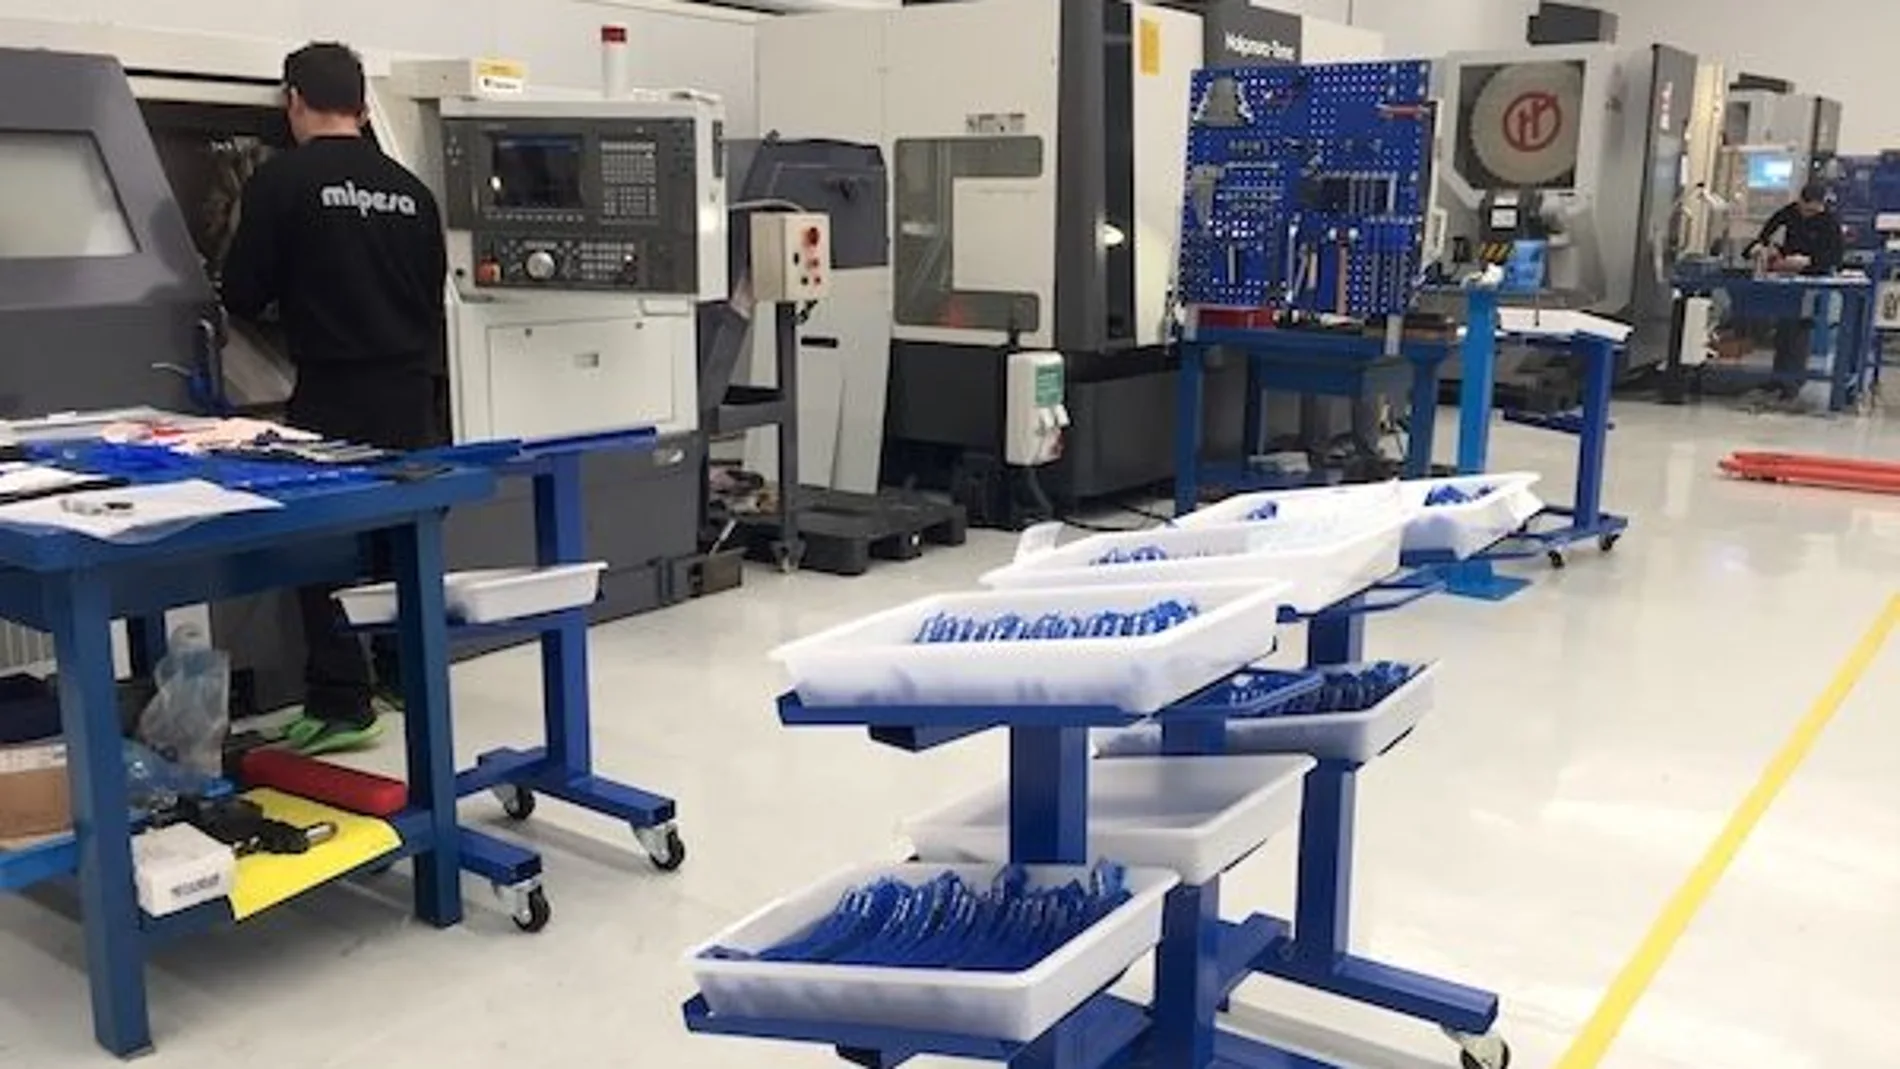 La empresa de mecanizados valenciana Mipesa ha iniciado este fin de semana la fabricación de unas 120 referencias diferentes, lo que suponen más de 24.000 piezas en total para respiradores